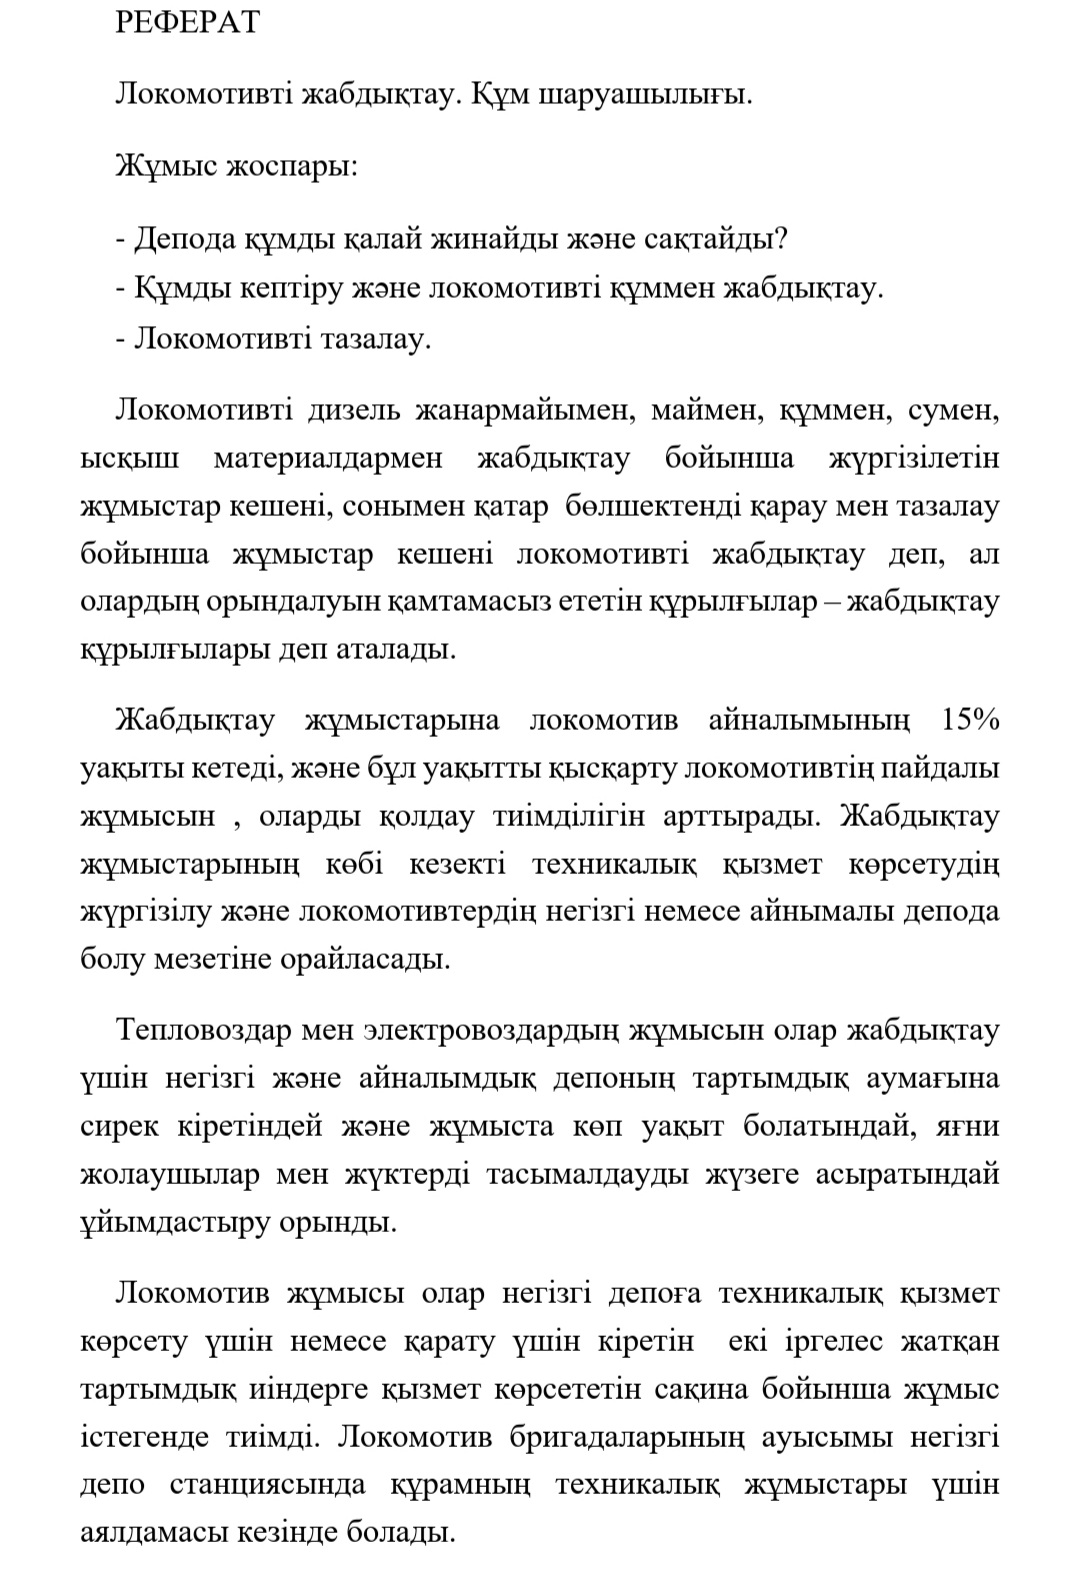 Фото Перевод технических текстов с русского на казахский языки быстро, качественно и недорого  1